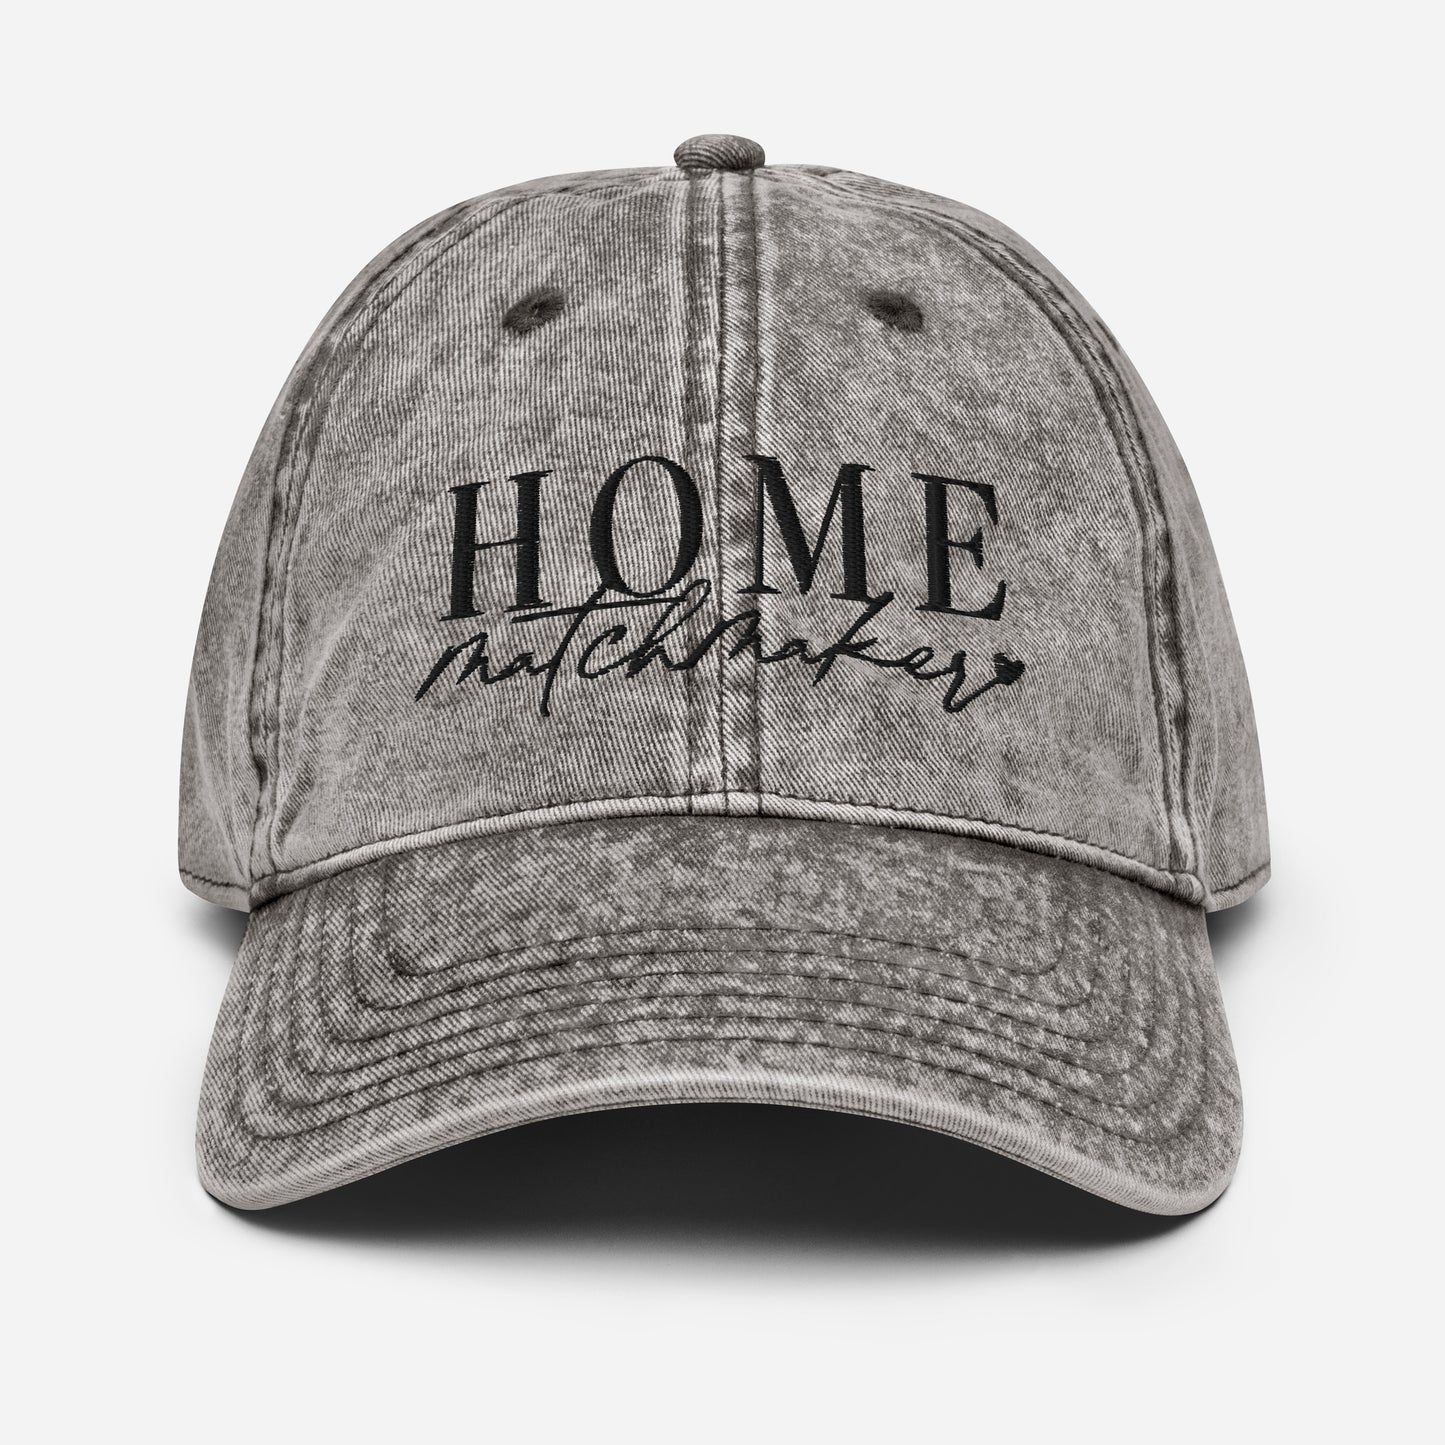 Home Matchmaker Vintage Hat